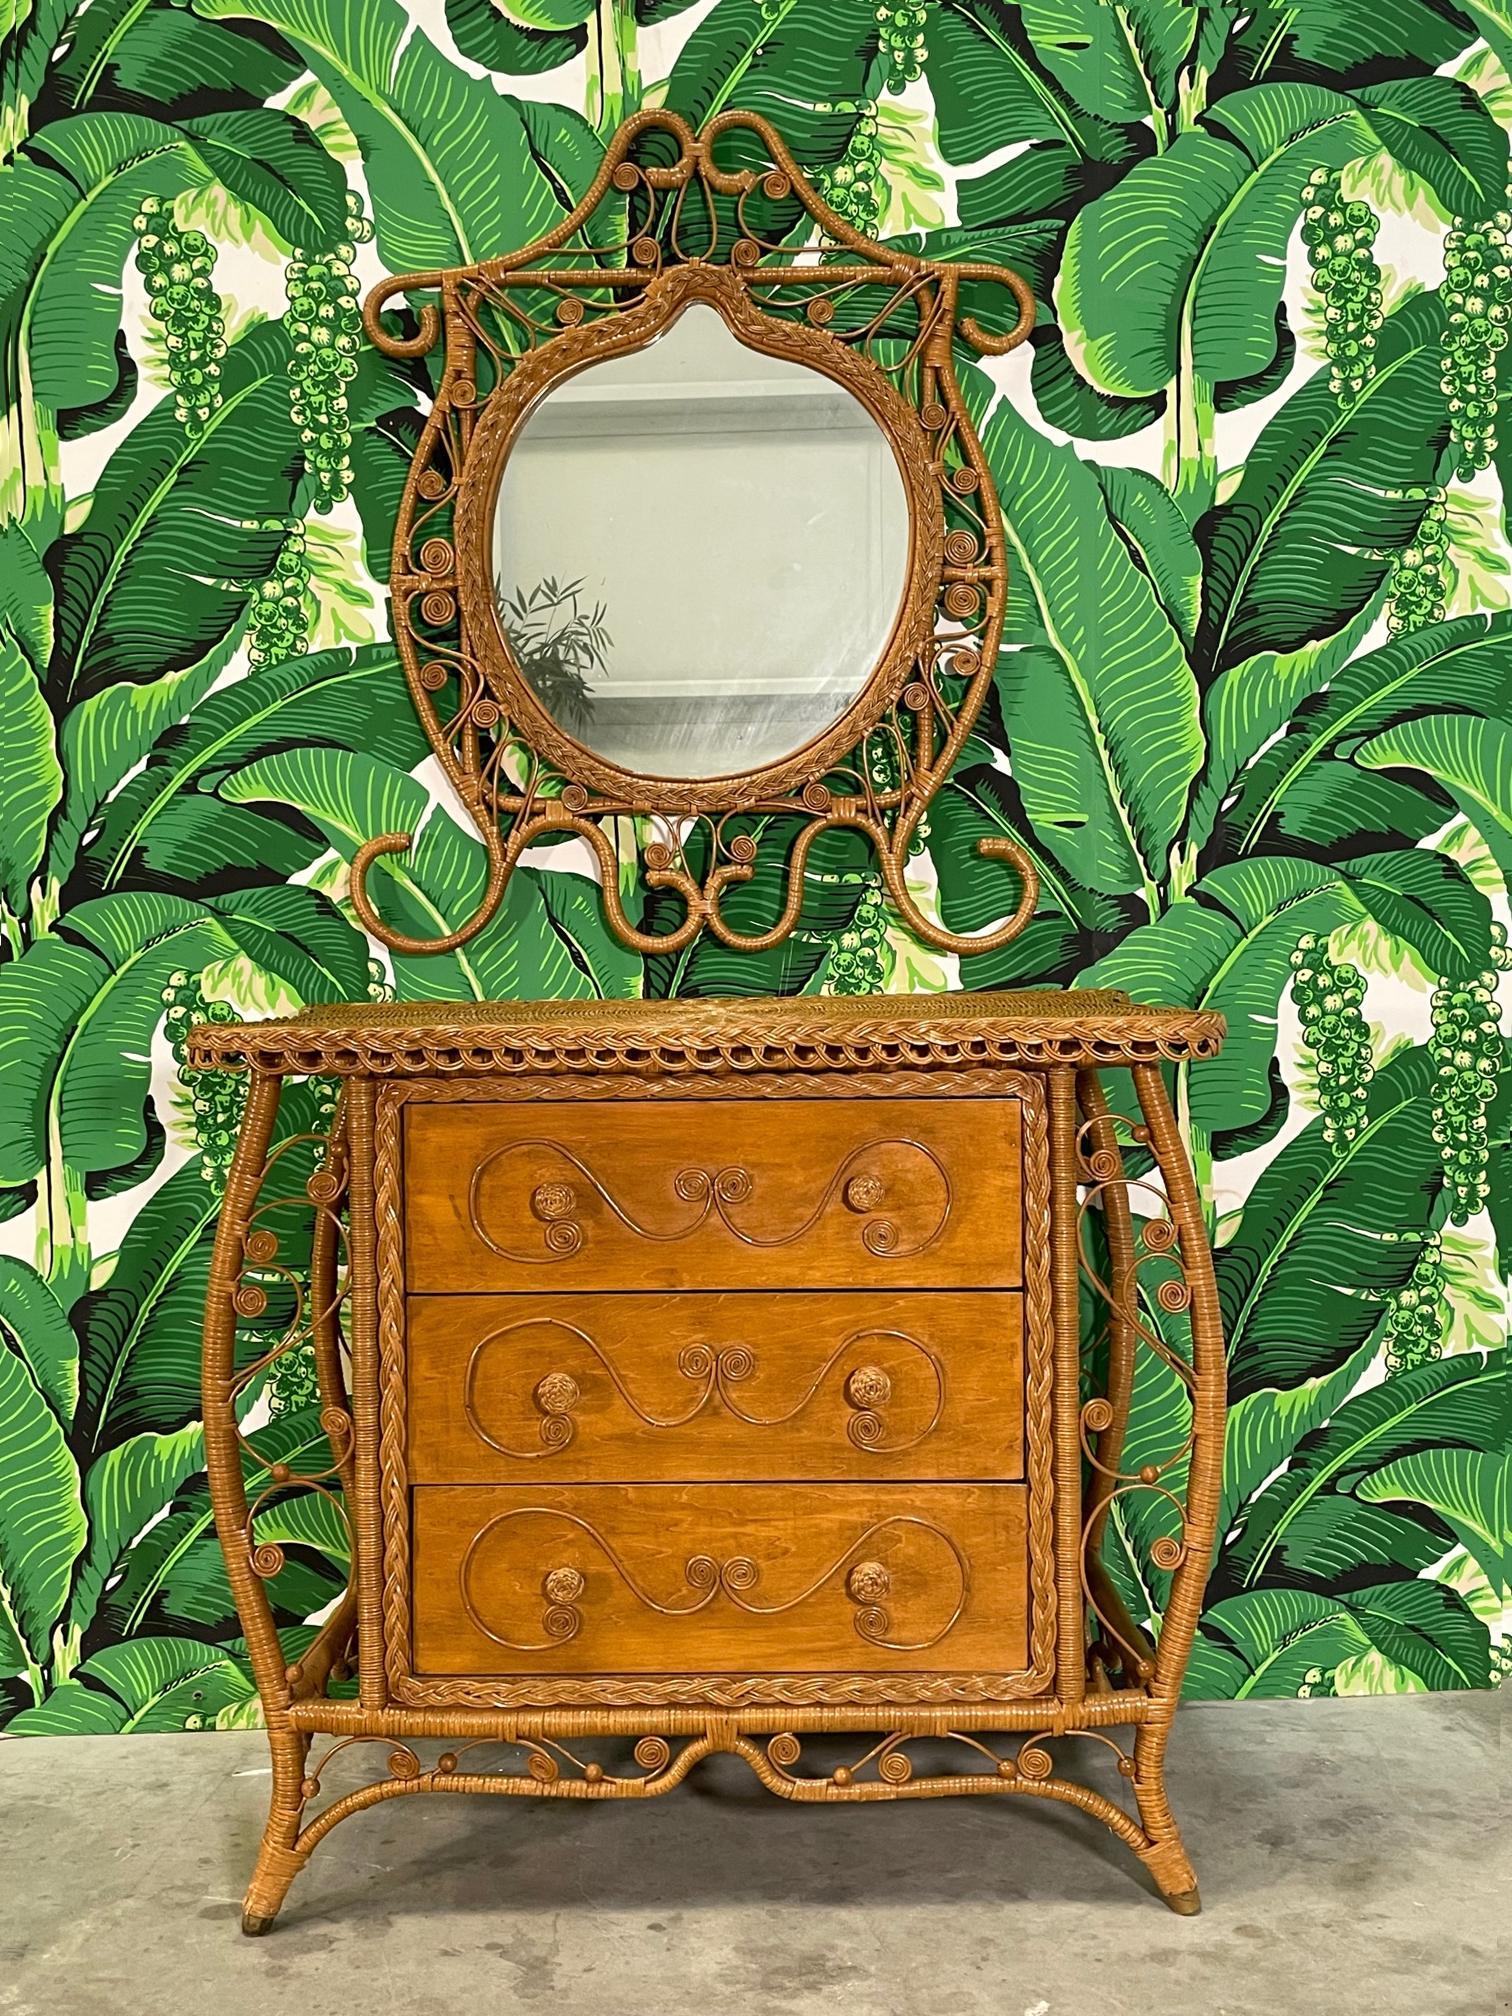 Die dreiteilige Vintage-Kommode ist mit Weidenfurnier und Details im Fiddlehead-Stil ausgestattet. Inklusive passendem Spiegel. Kommode misst 39,5 